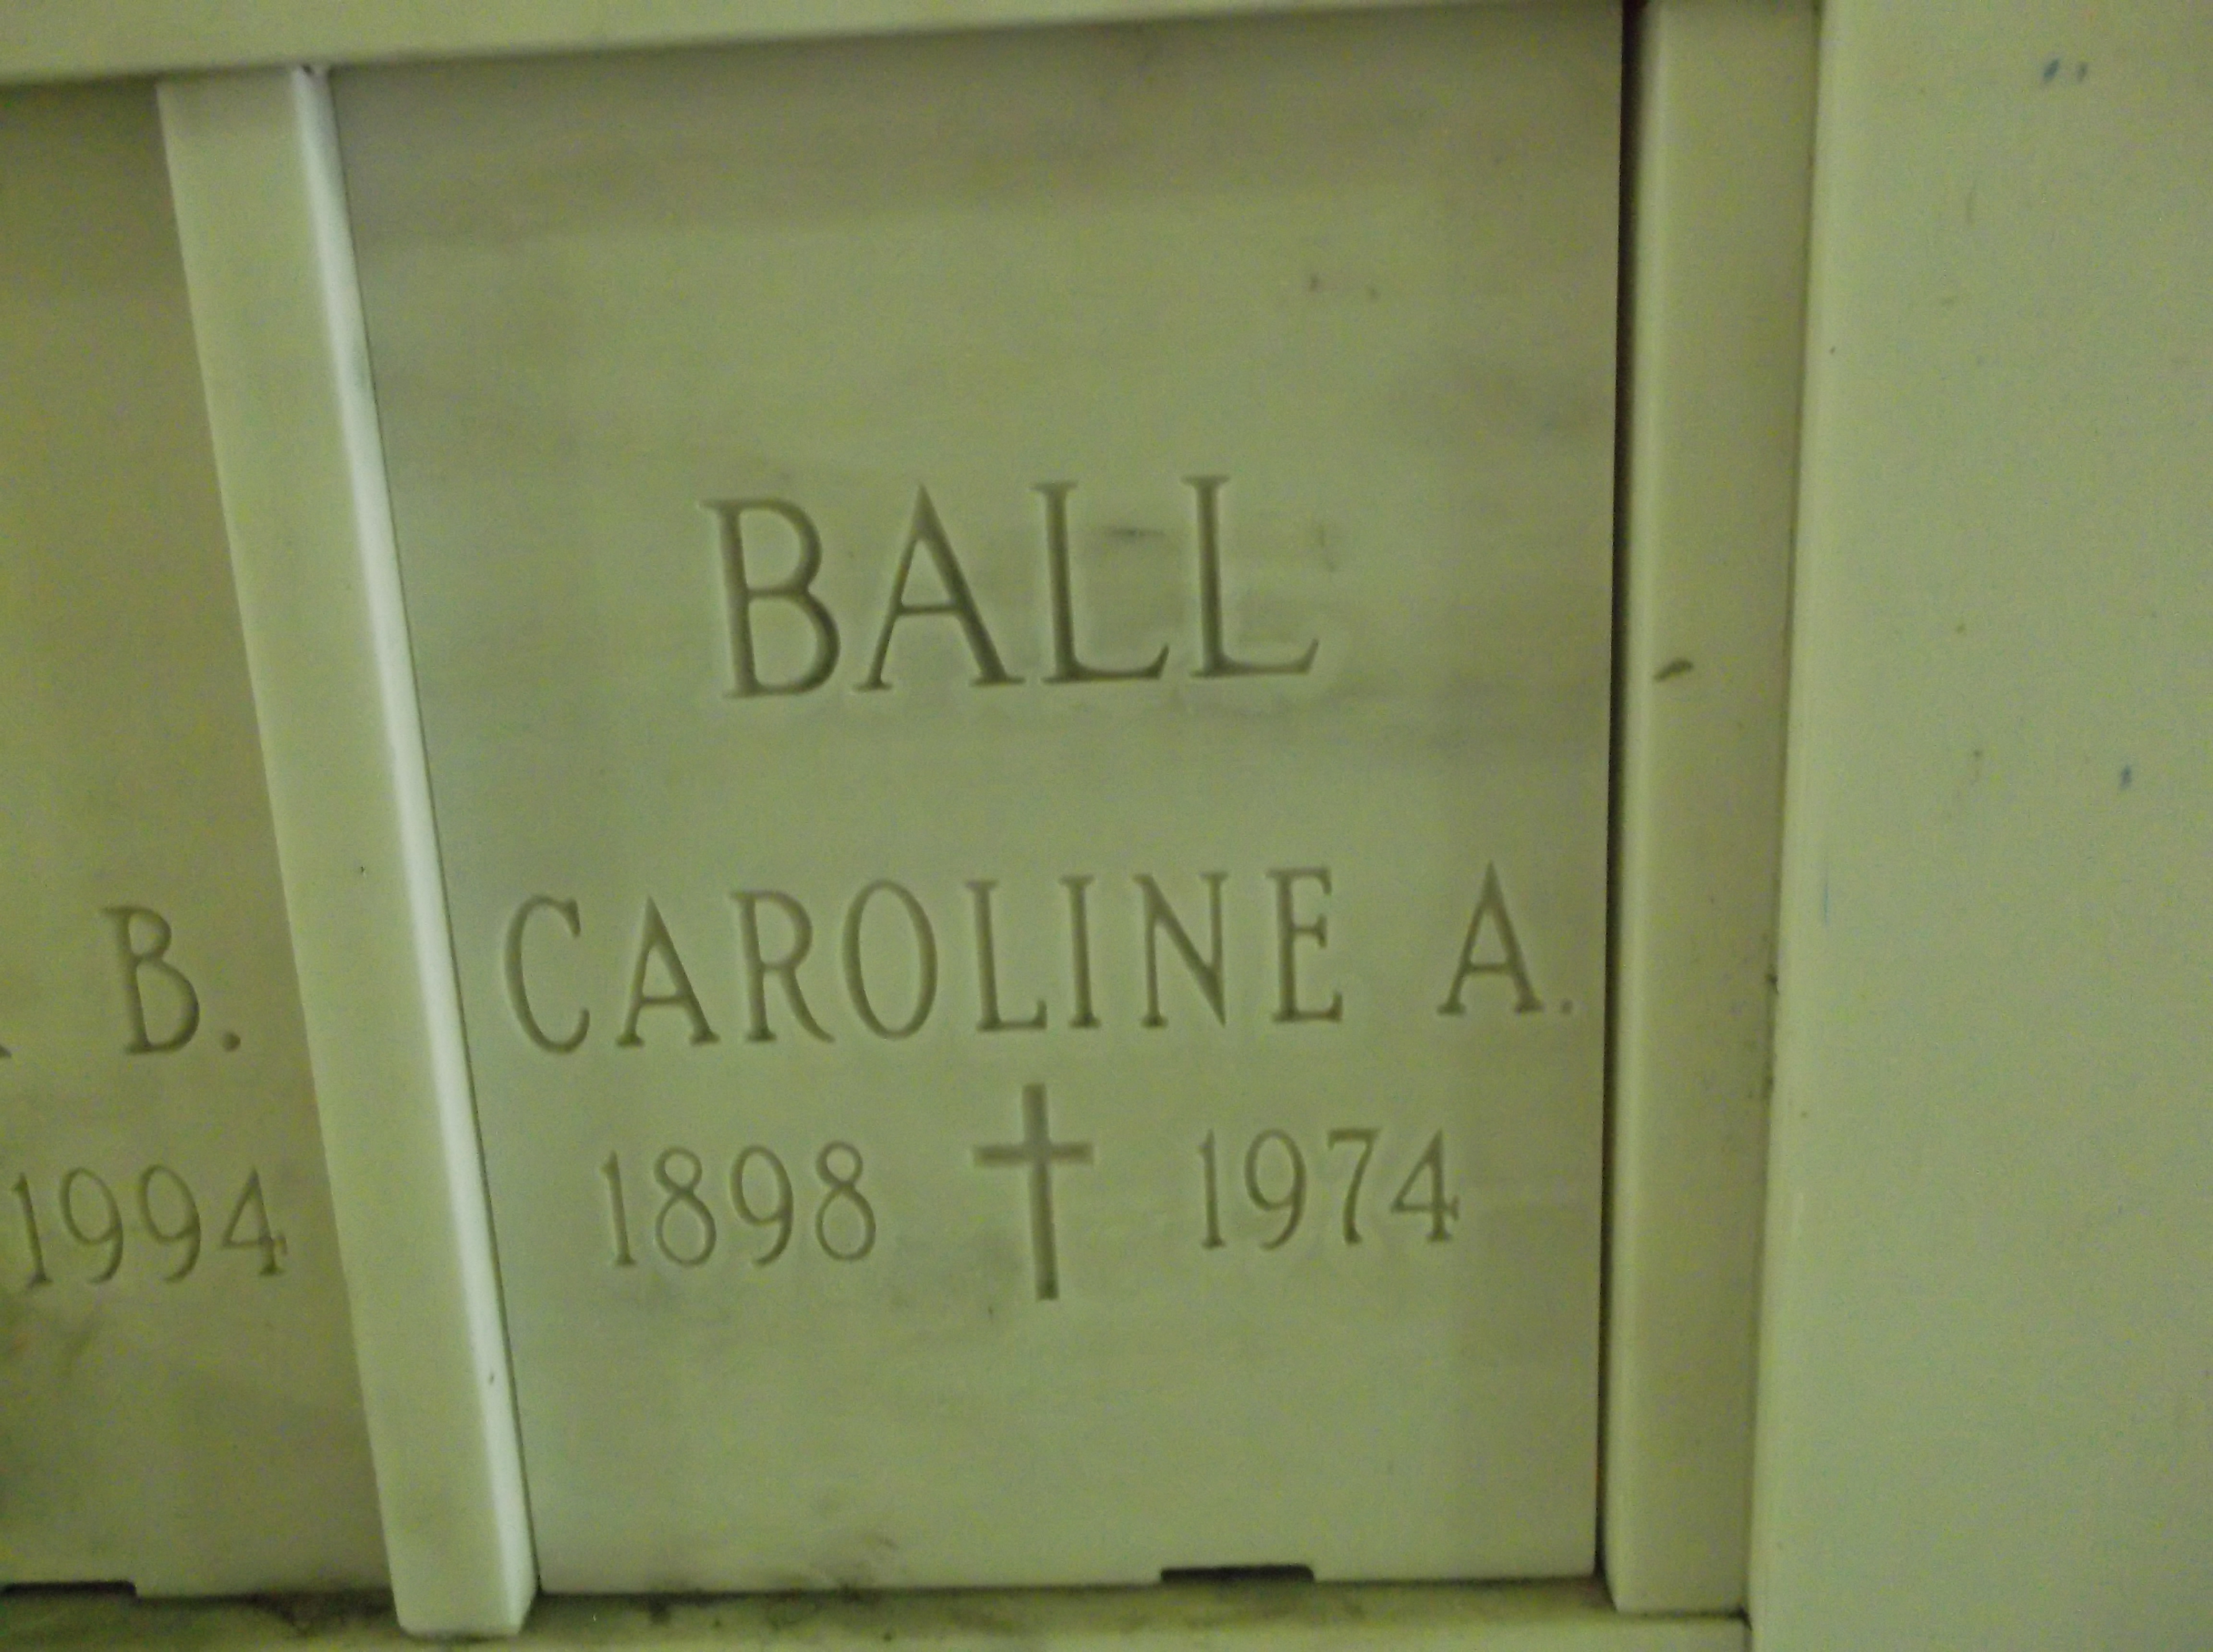 Caroline A Ball